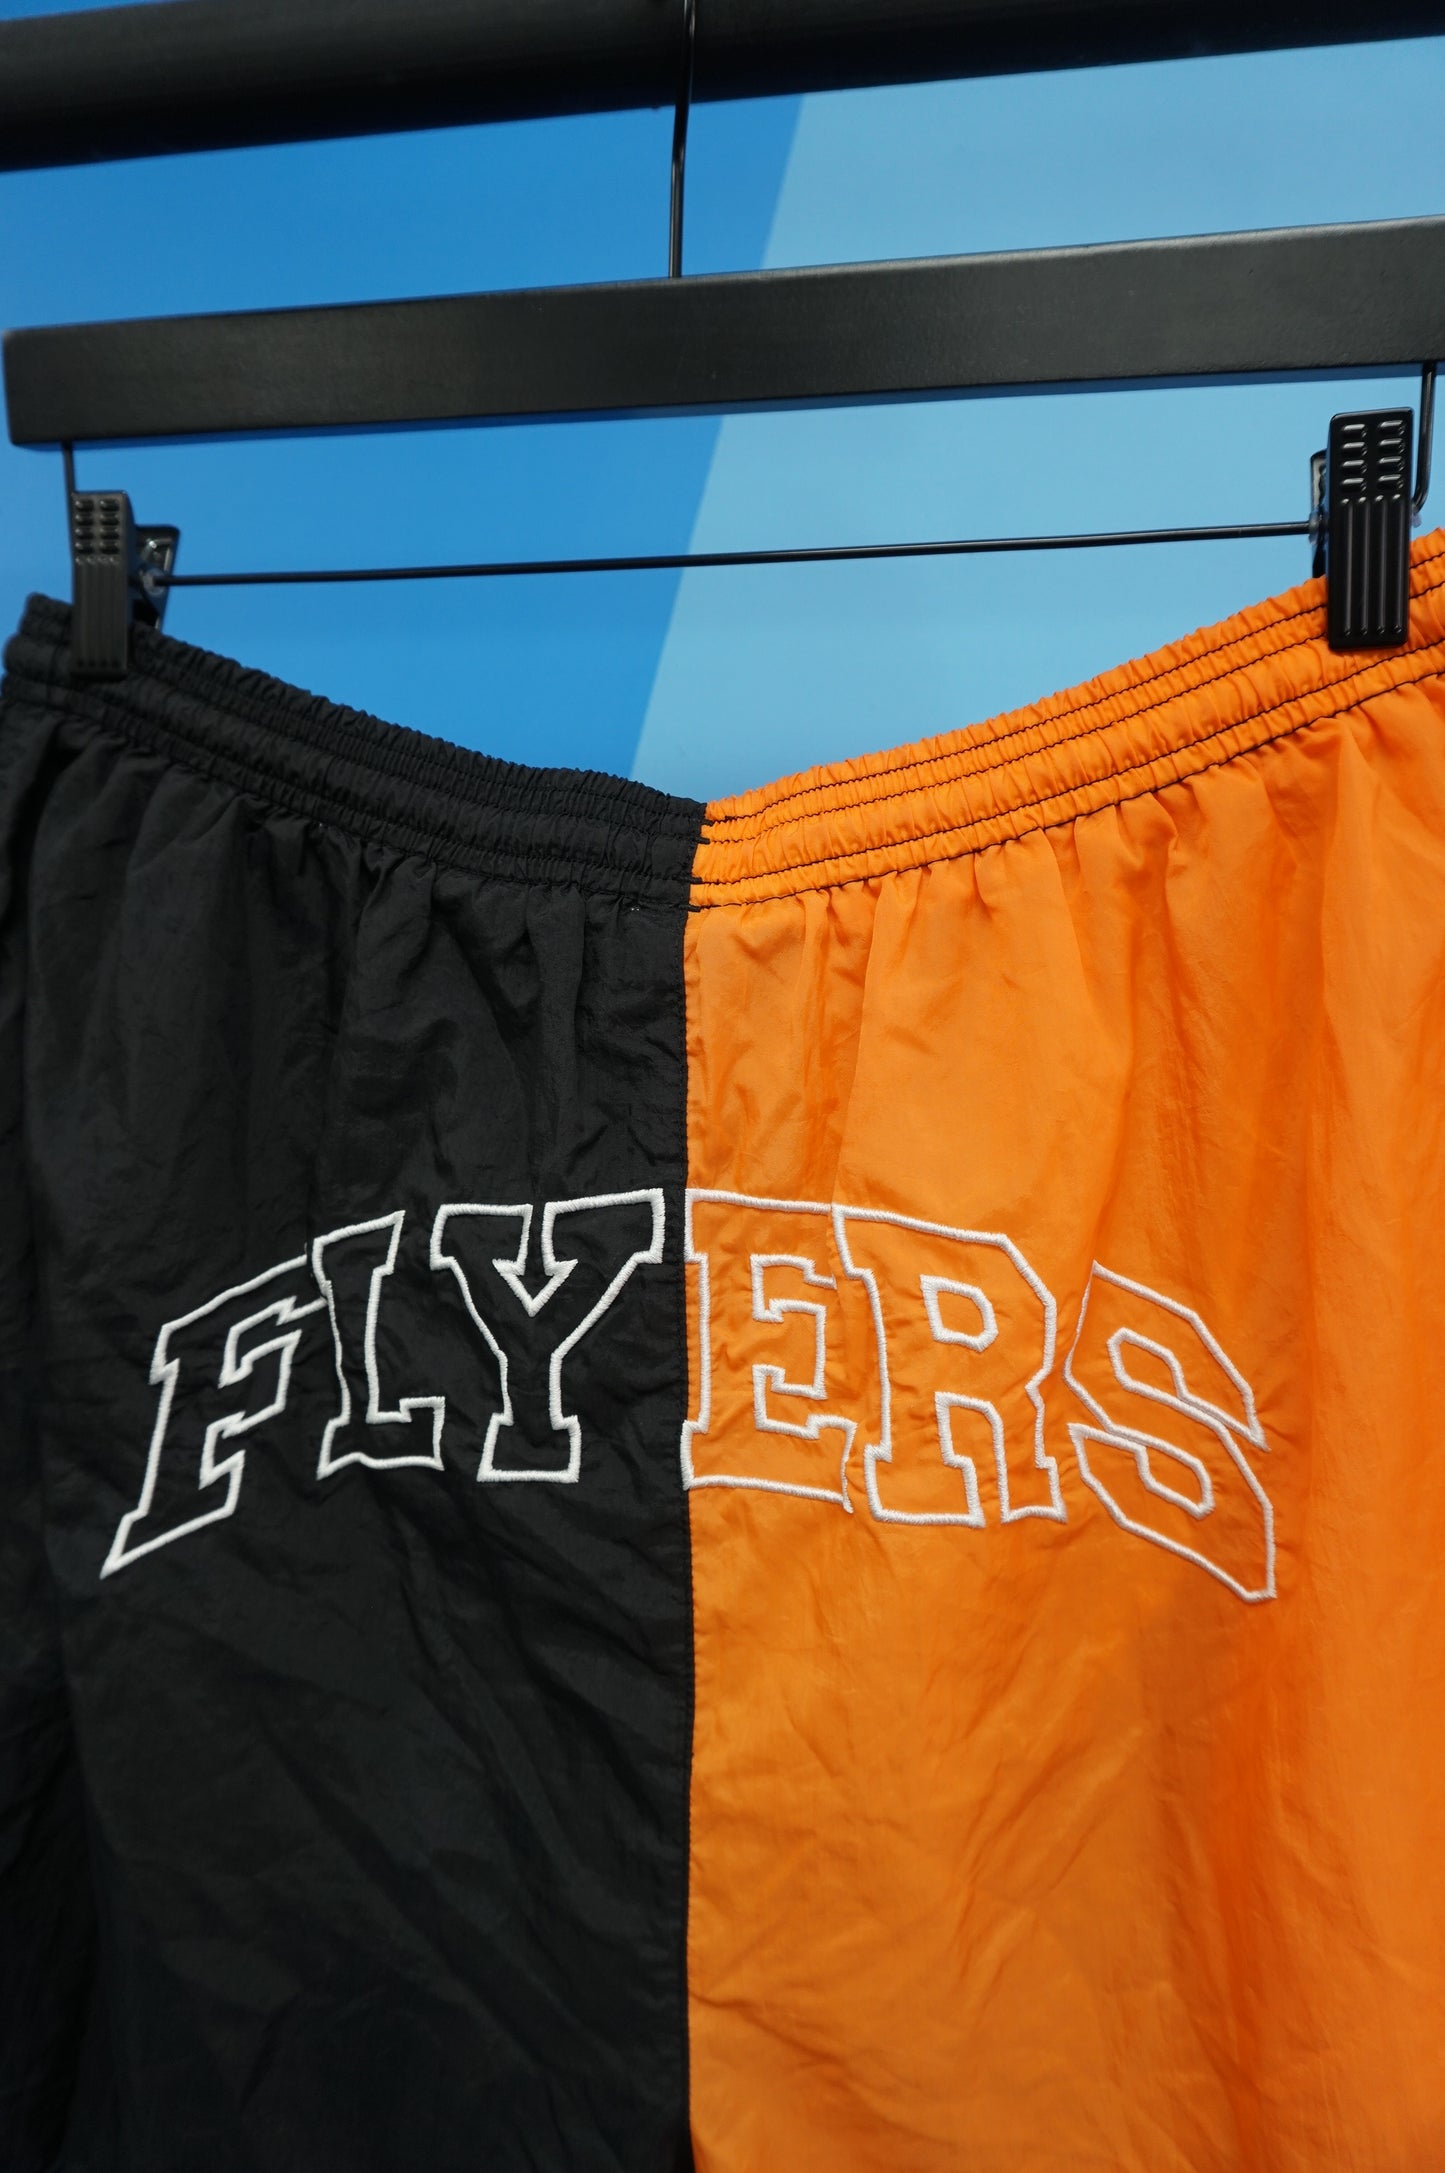 (L) Vtg Philadelphia Flyers Starter Shorts